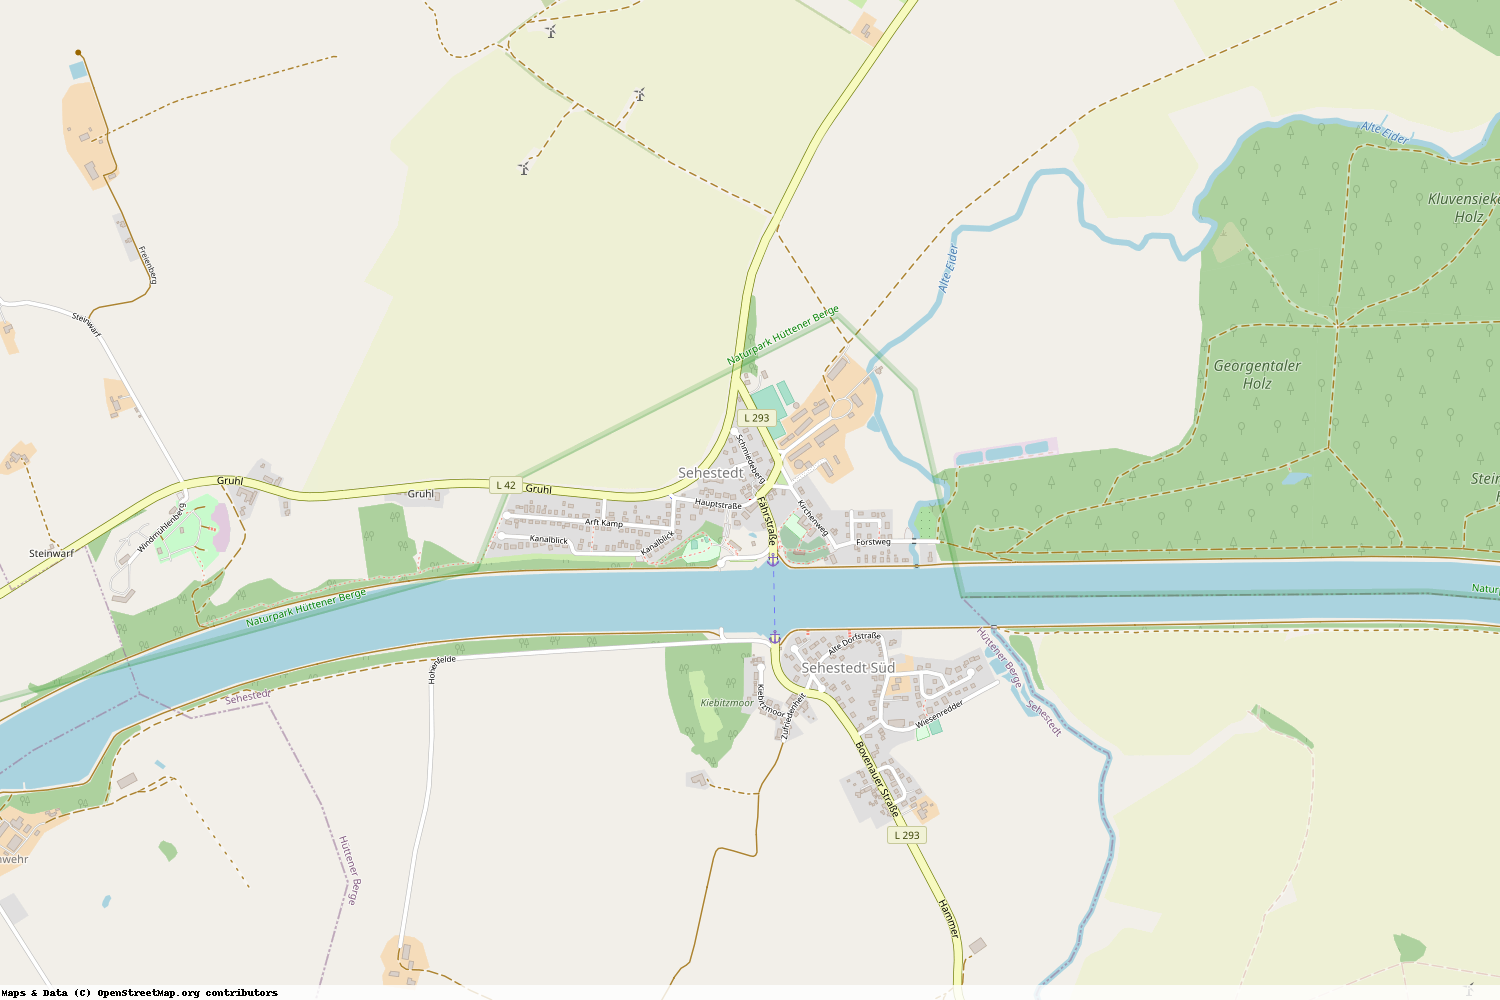 Ist gerade Stromausfall in Schleswig-Holstein - Rendsburg-Eckernförde - Sehestedt?